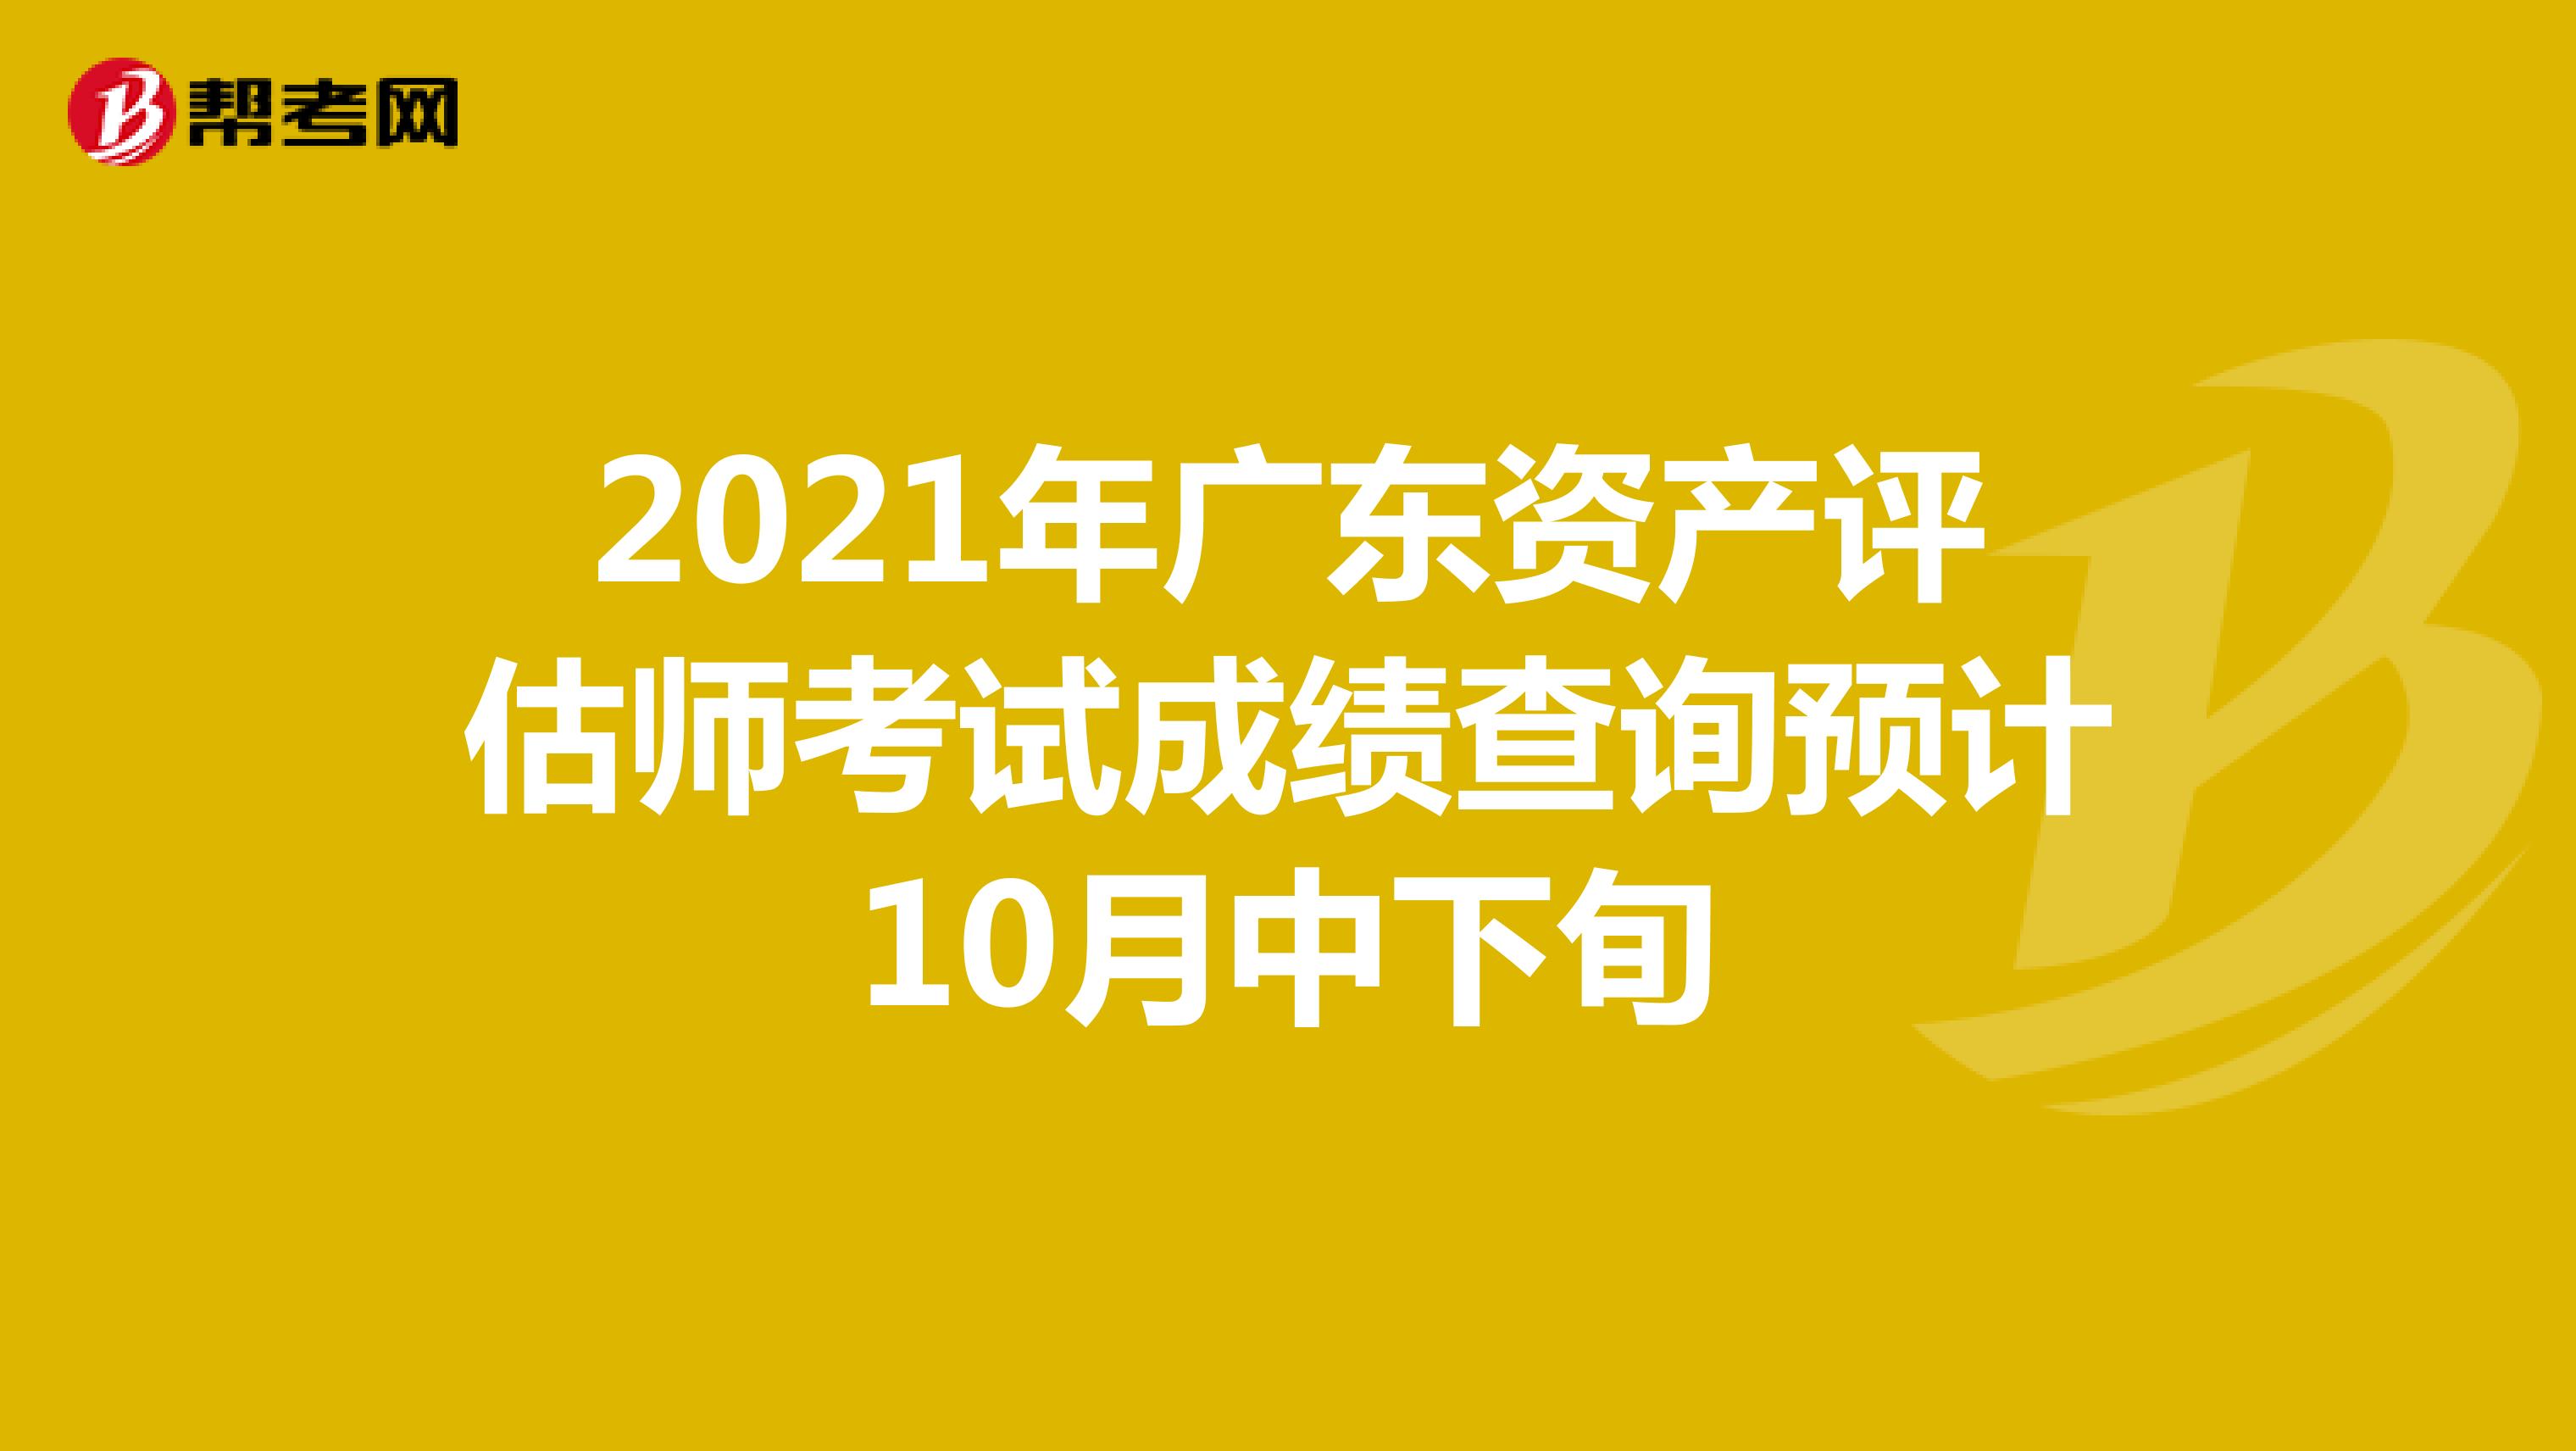 2021年广东资产评估师考试成绩查询预计10月中下旬